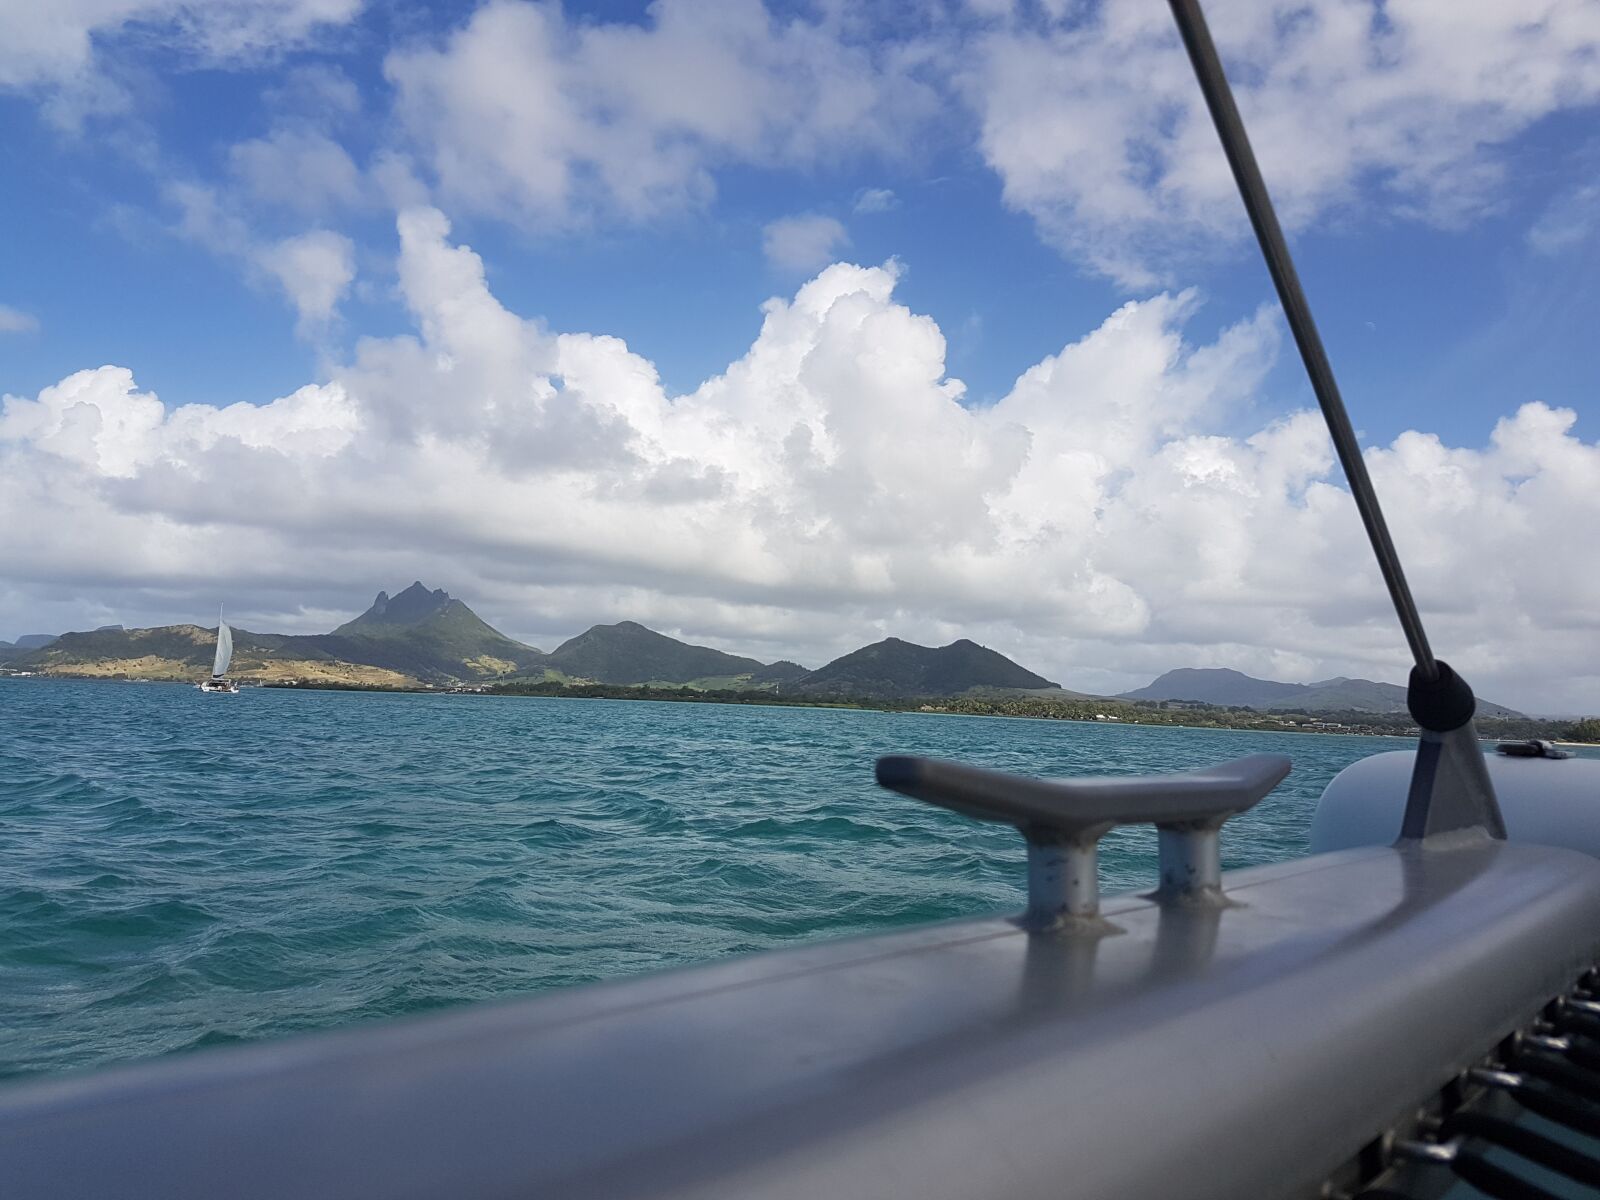 Samsung Galaxy S7 sample photo. Sailing, sailboat, island photography